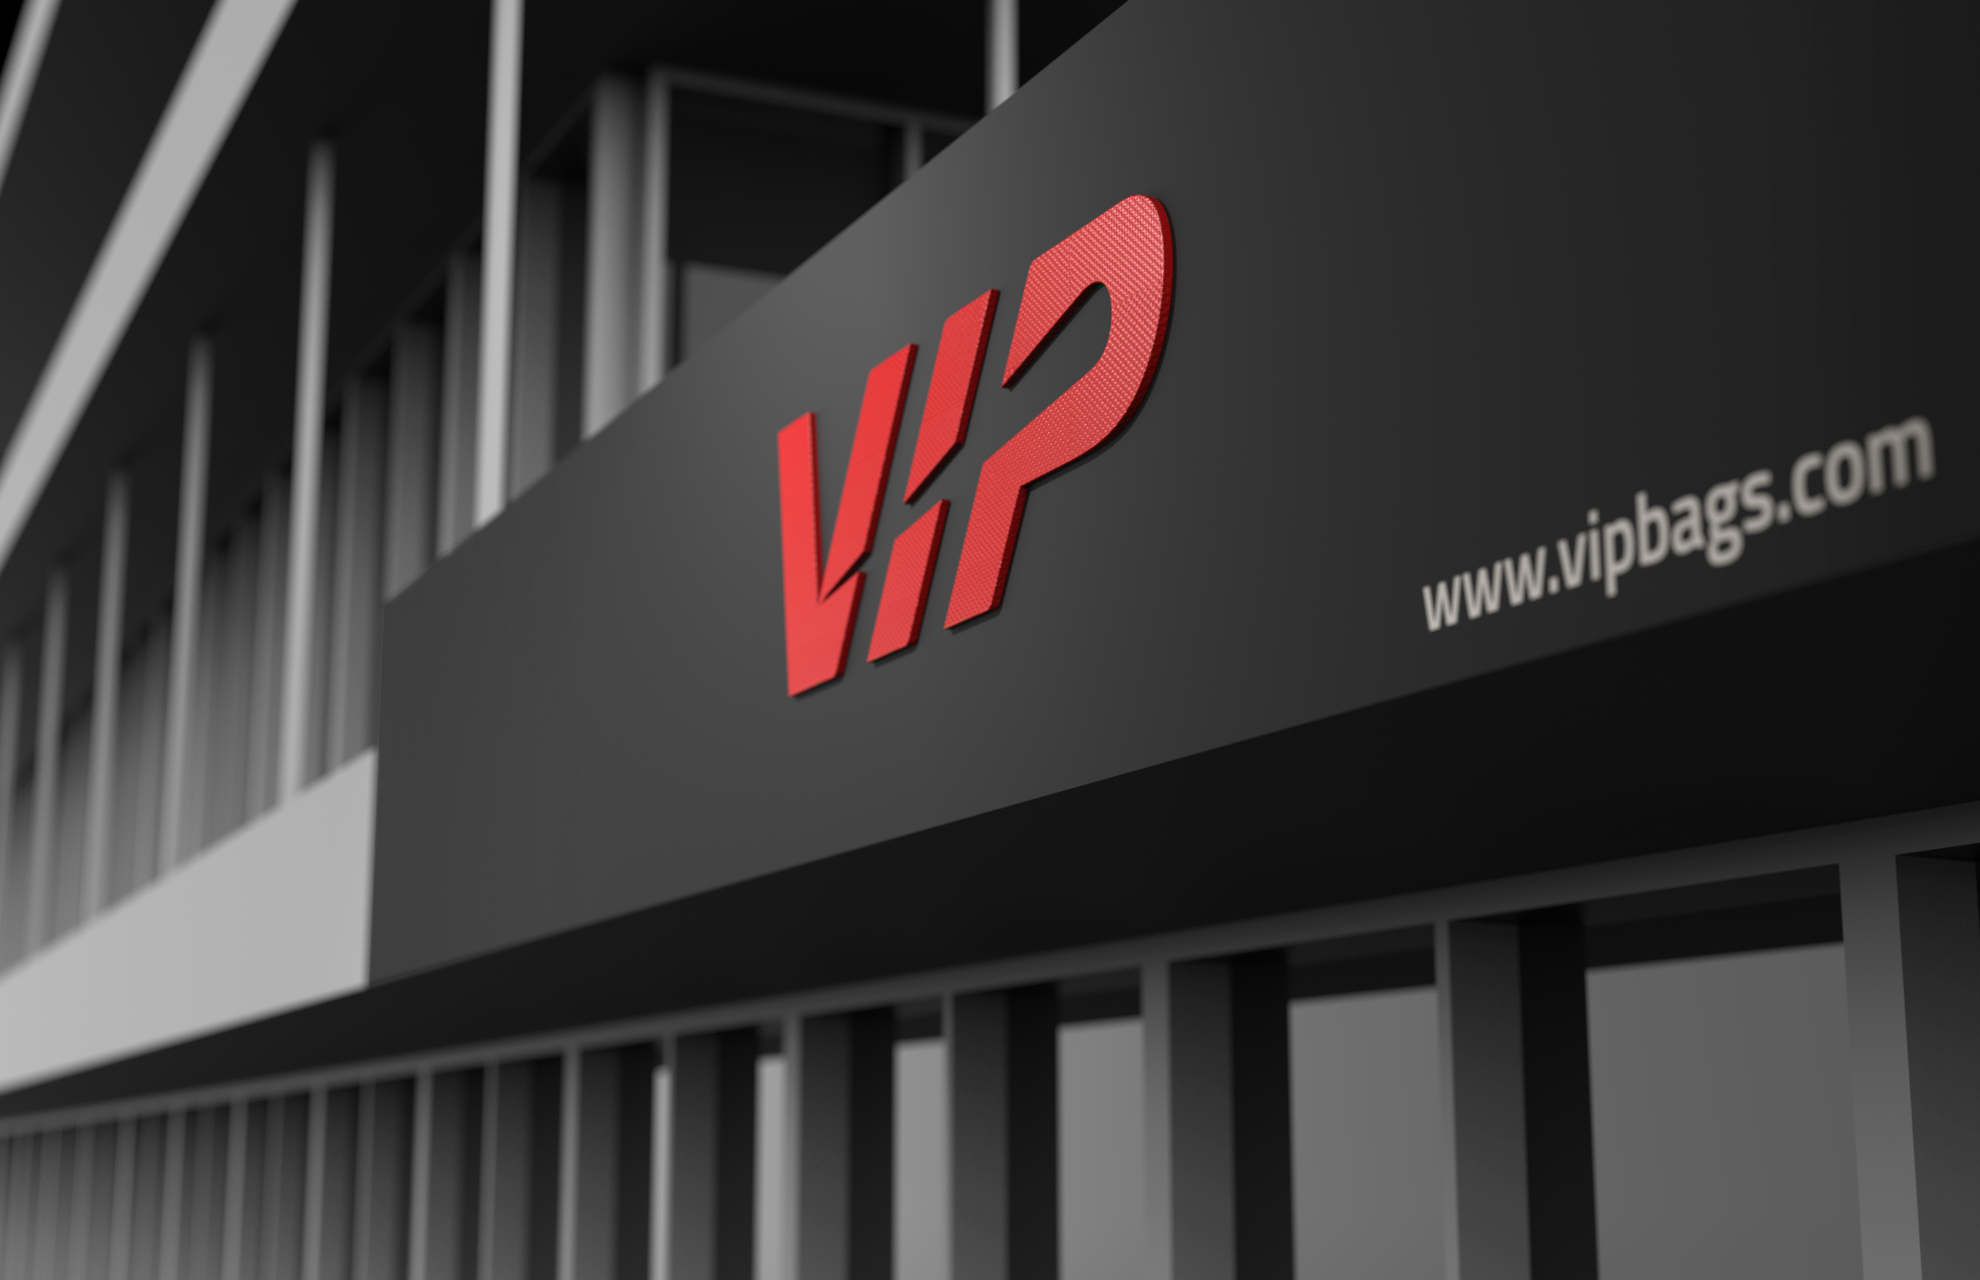 Storefront logo design for VIP